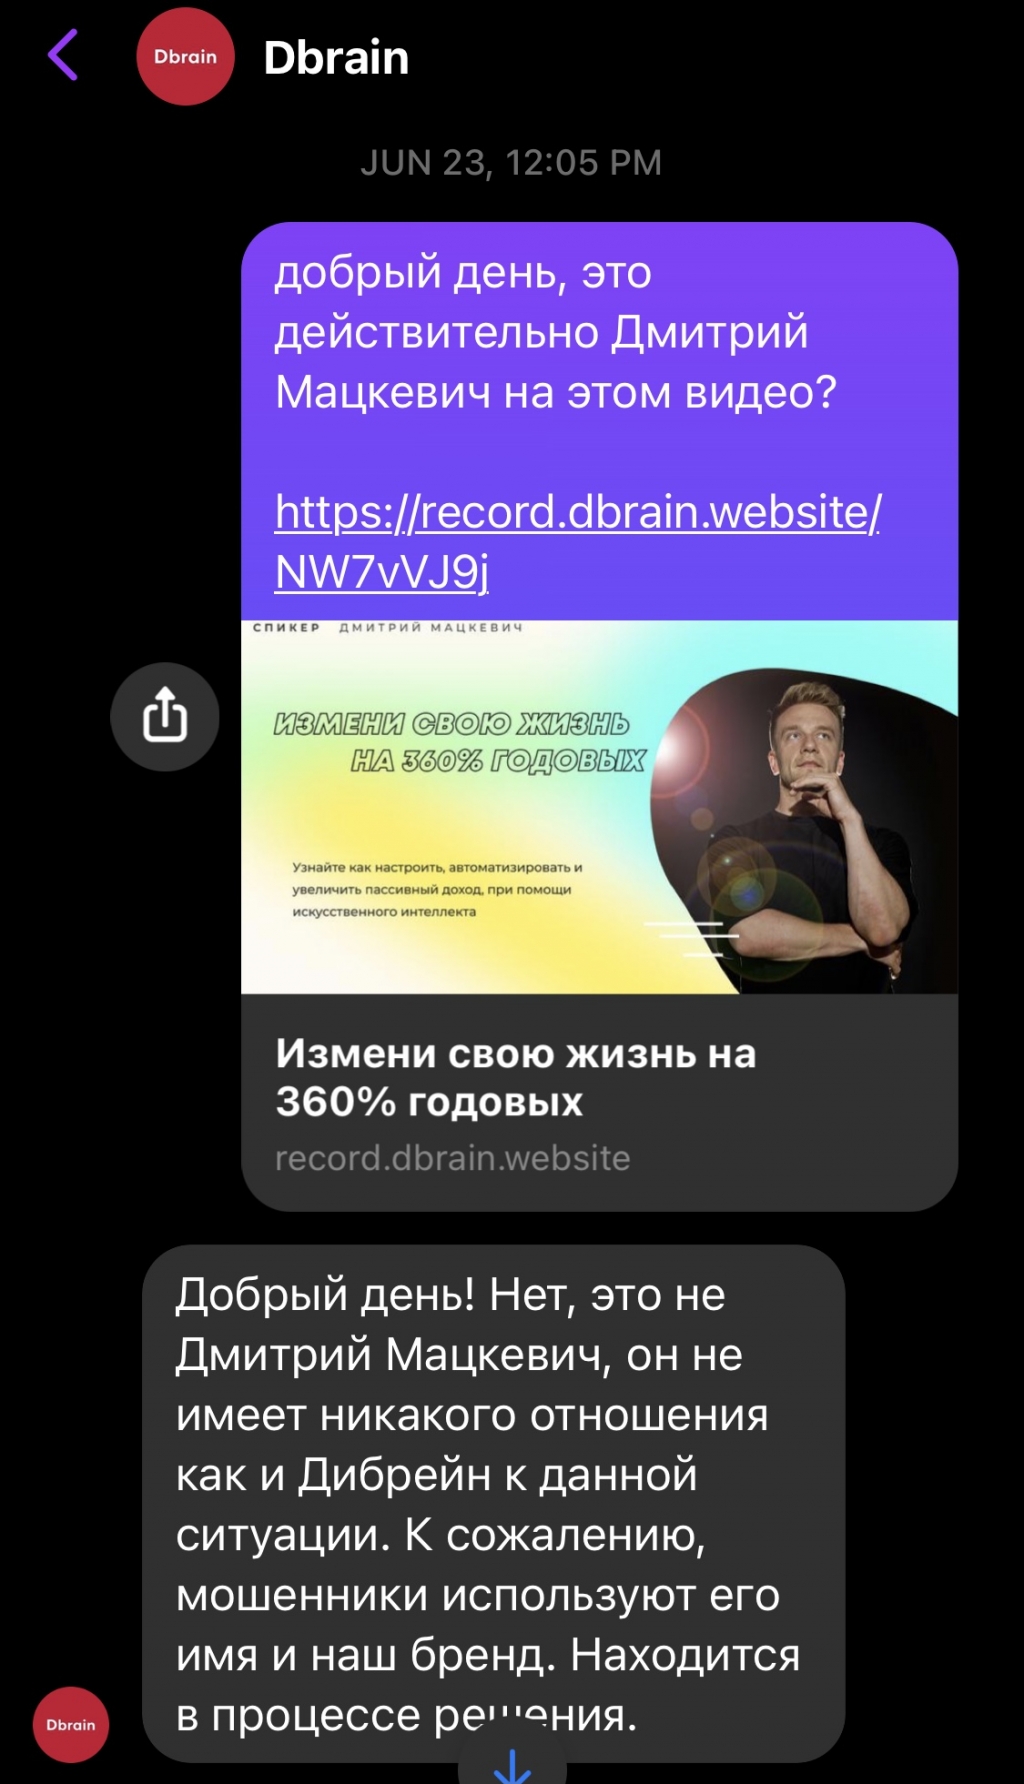 Dbrain | Отзывы пользователей блокчейн платформы Дмитрия Мацкевича - Dbrain.io подтвердили что это мошенники